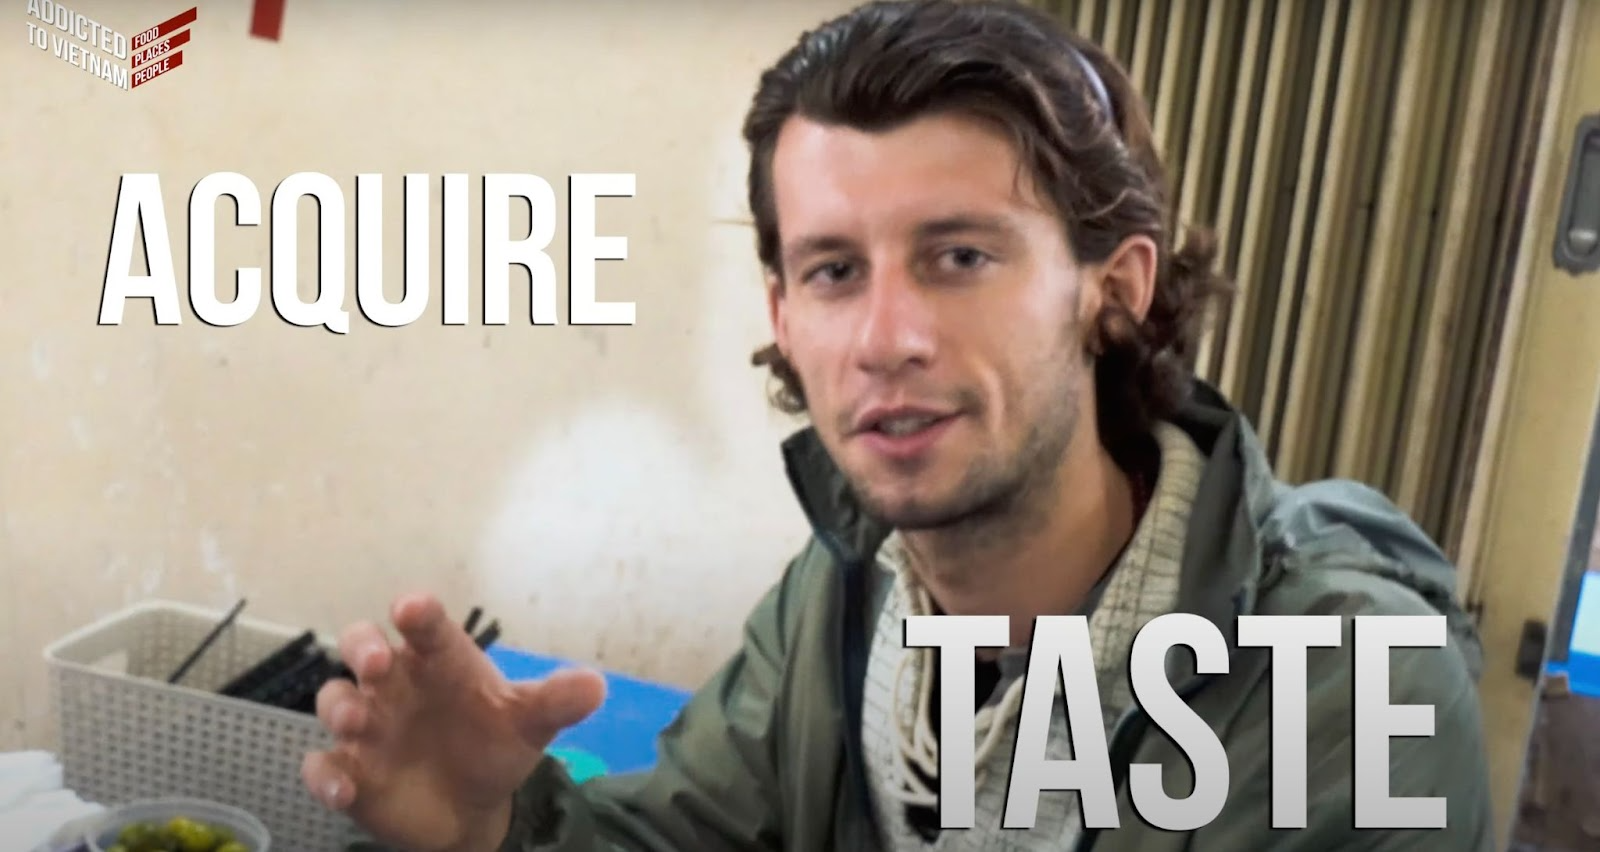 Du khách người Anh hướng dẫn ăn bún đậu mắm tôm trên Youtube: Món này càng ăn càng nghiện - Ảnh 3.